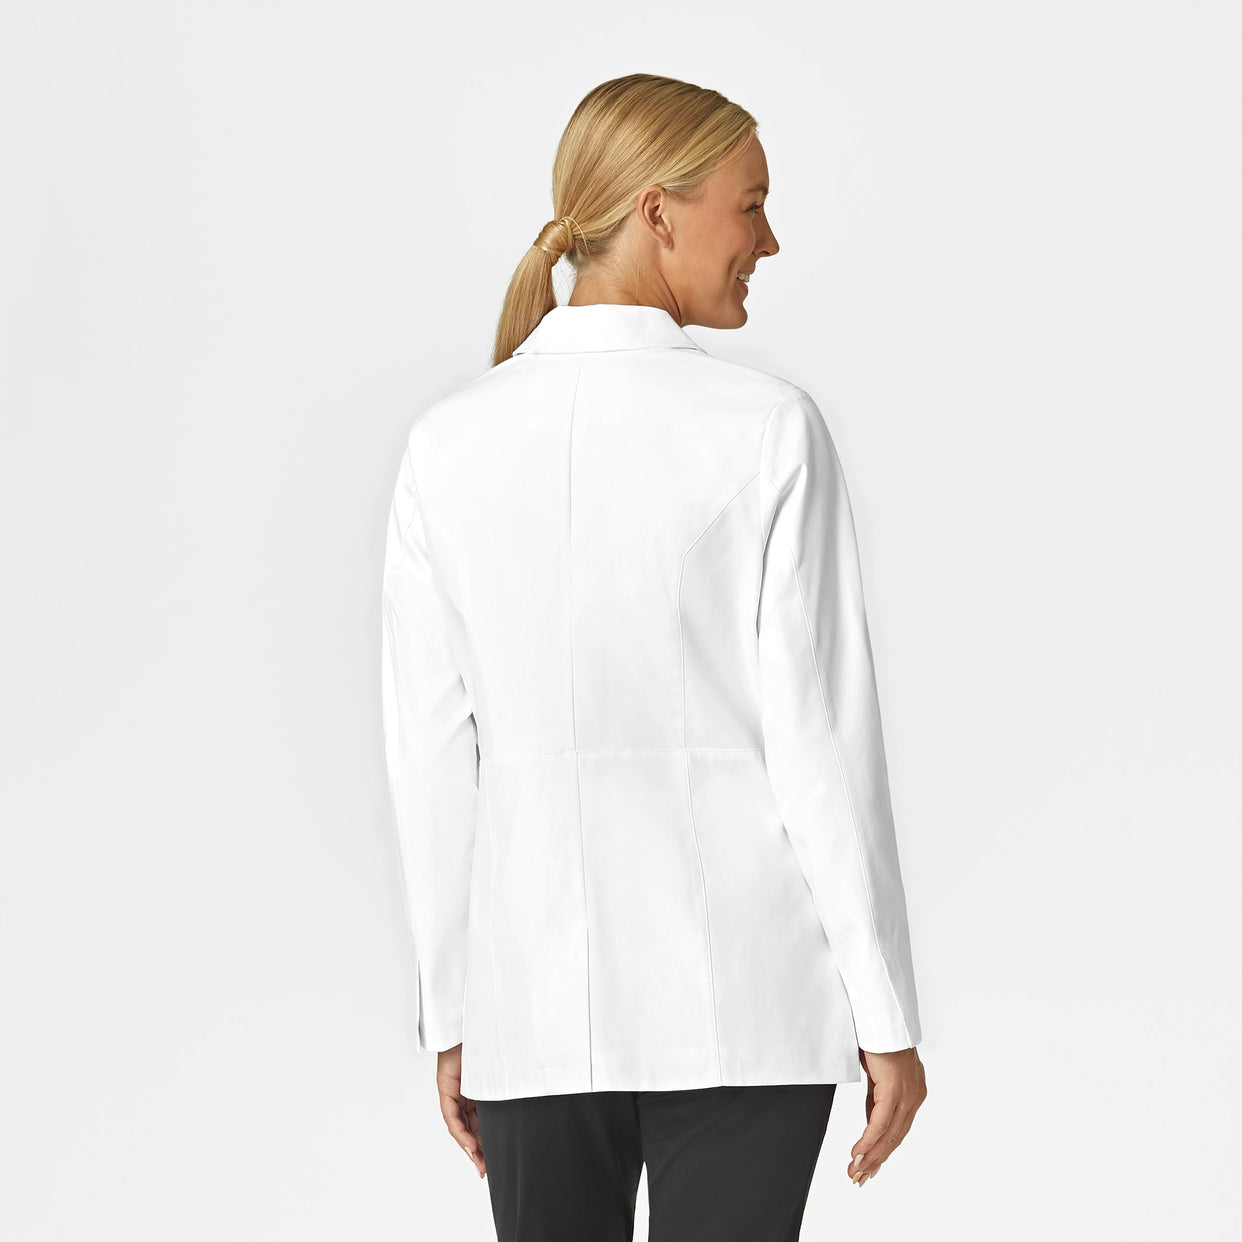 Wink Slate Women's 28 Inch Doctors Coat - White Back